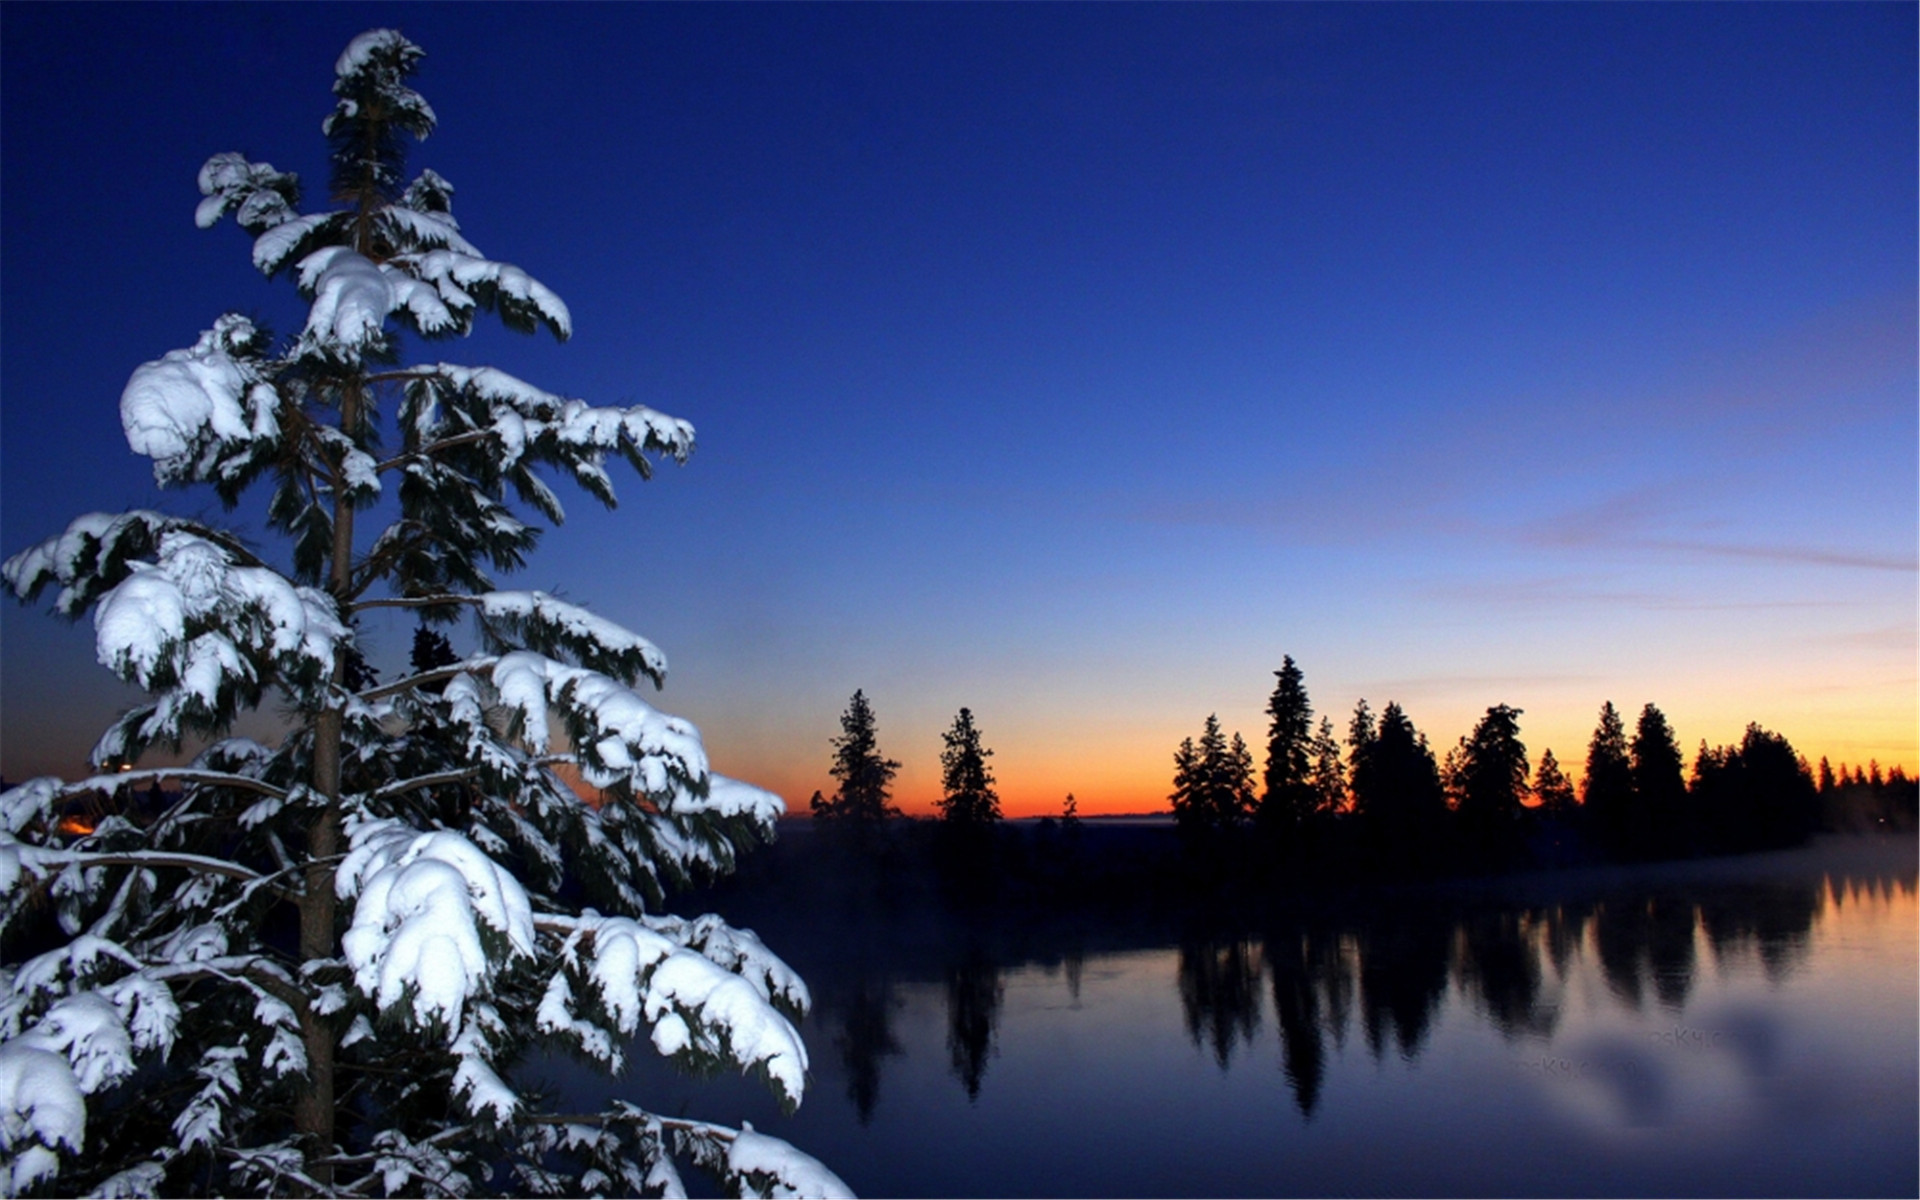 冬天雪景图片大全 奇异美丽的冬日雪景图片(2)